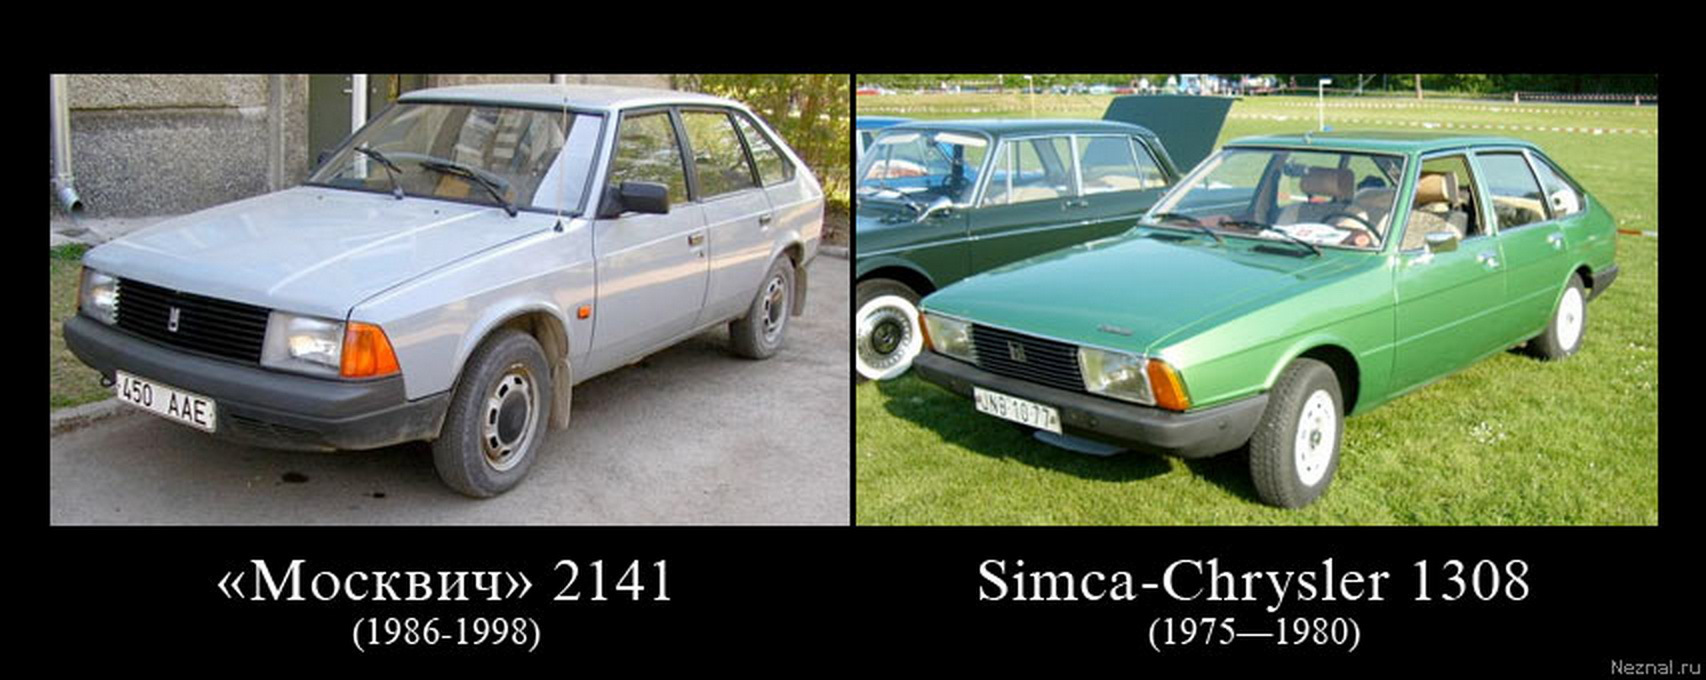 Слизанные машины. Москвич 2141 это копия. Советский автомобиль Москвич 2141. Машина похожая на Москвич 2141.